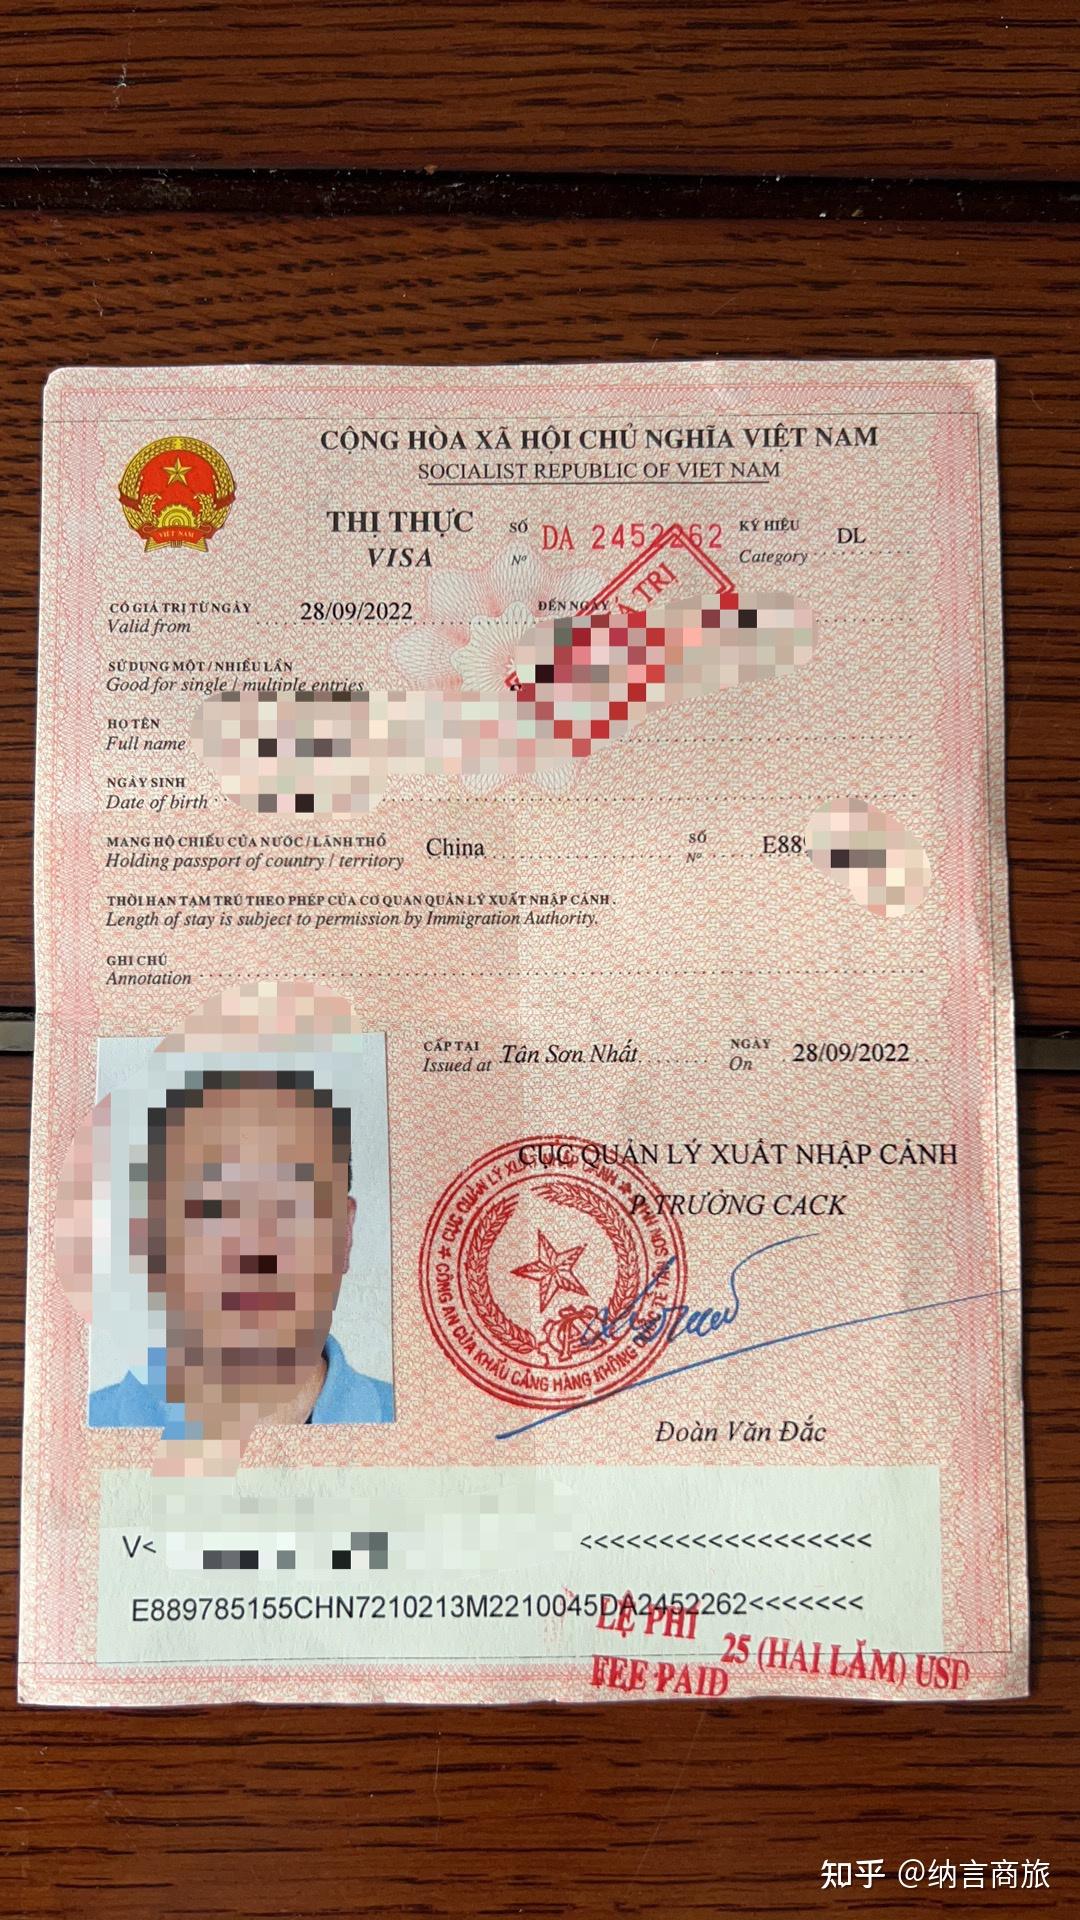 中国人入境越南免签吗？ | Vietnamimmigration.com official website | e-visa & Visa On Arrival for Vietnam ...